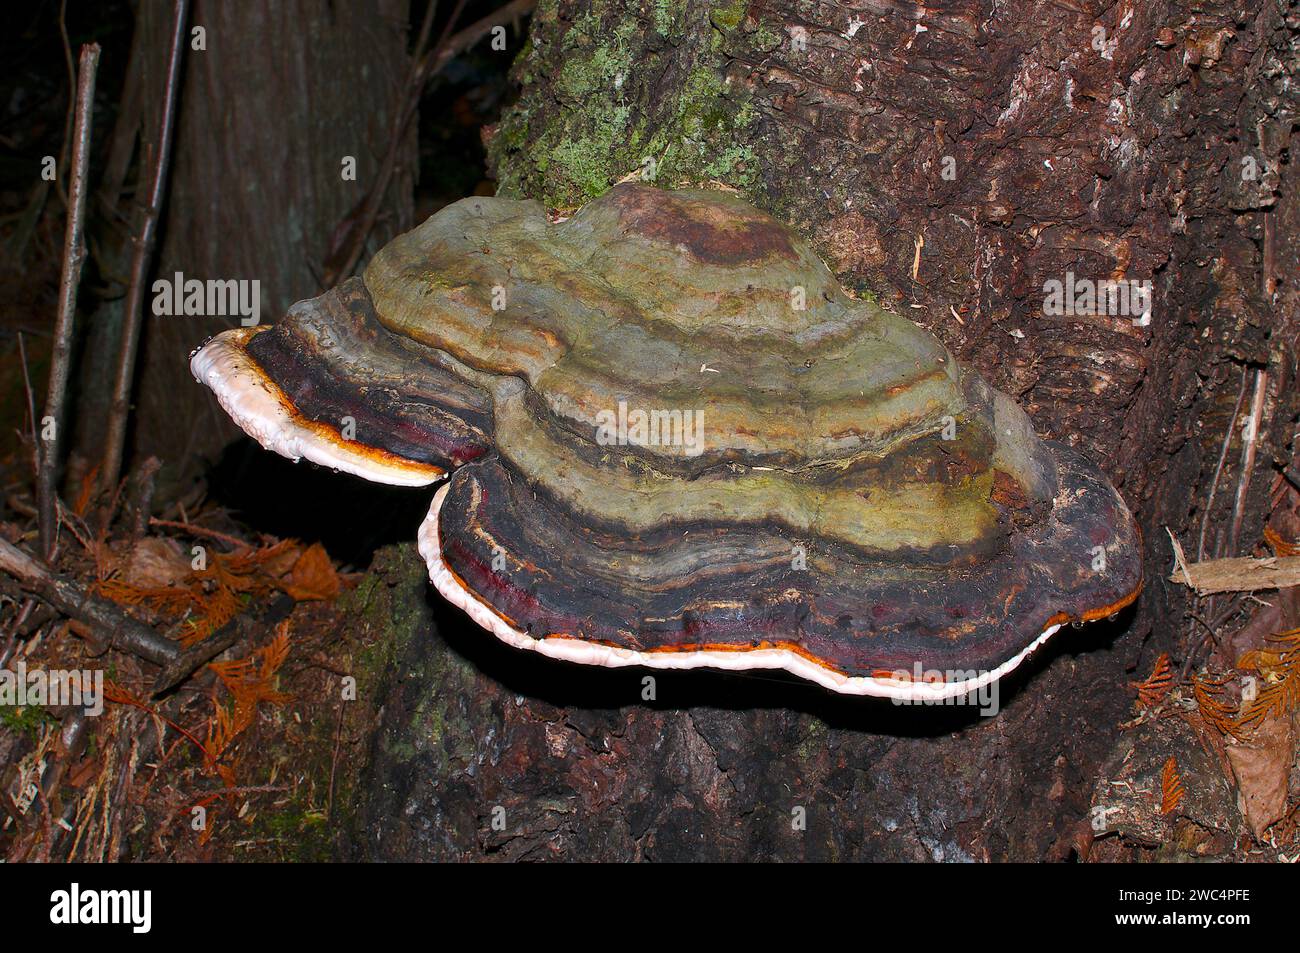 Fungo a staffa o fungo da scaffale (Basidiomycetes) che cresce alla base di un albero nel nord-ovest del Pacifico, in Canada. Foto Stock